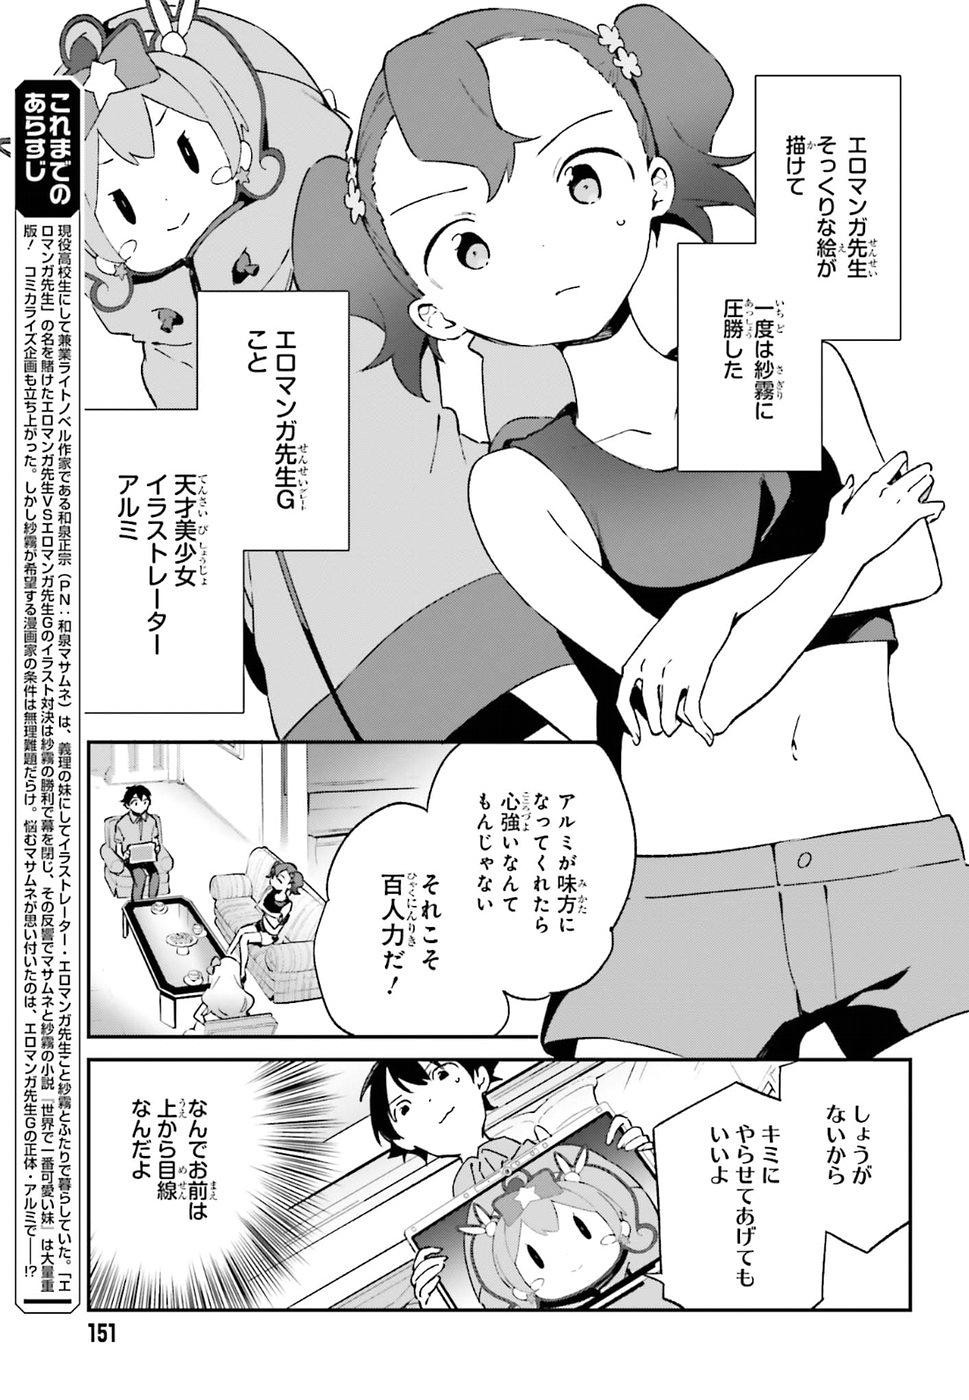 Ero Manga Sensei - Chapter 48 - Page 3